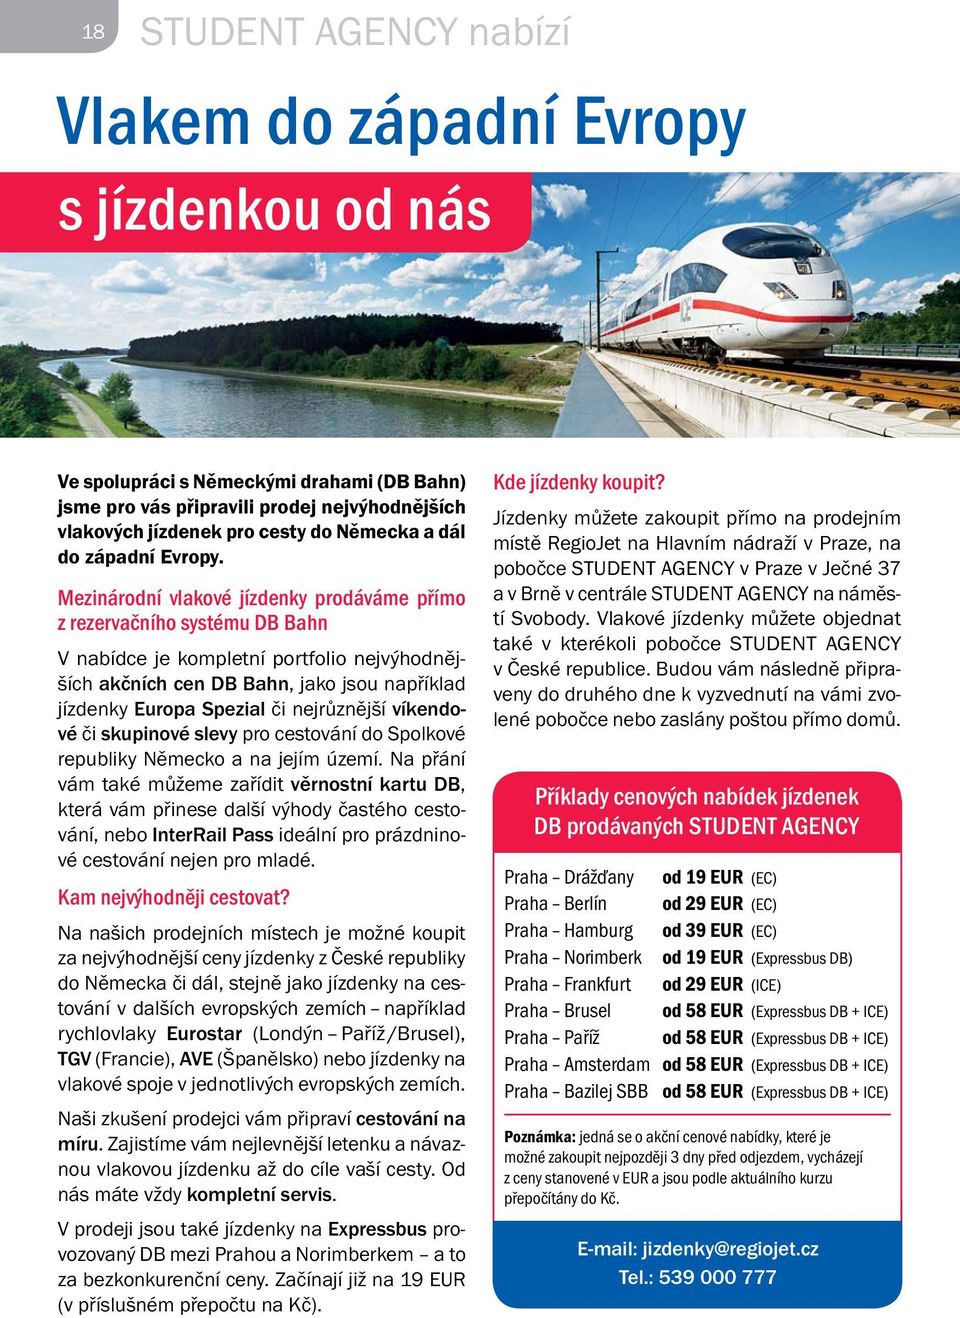 Mezinárodní vlakové jízdenky prodáváme přímo z rezervačního systému DB Bahn V nabídce je kompletní portfolio nejvýhodnějších akčních cen DB Bahn, jako jsou například jízdenky Europa Spezial či